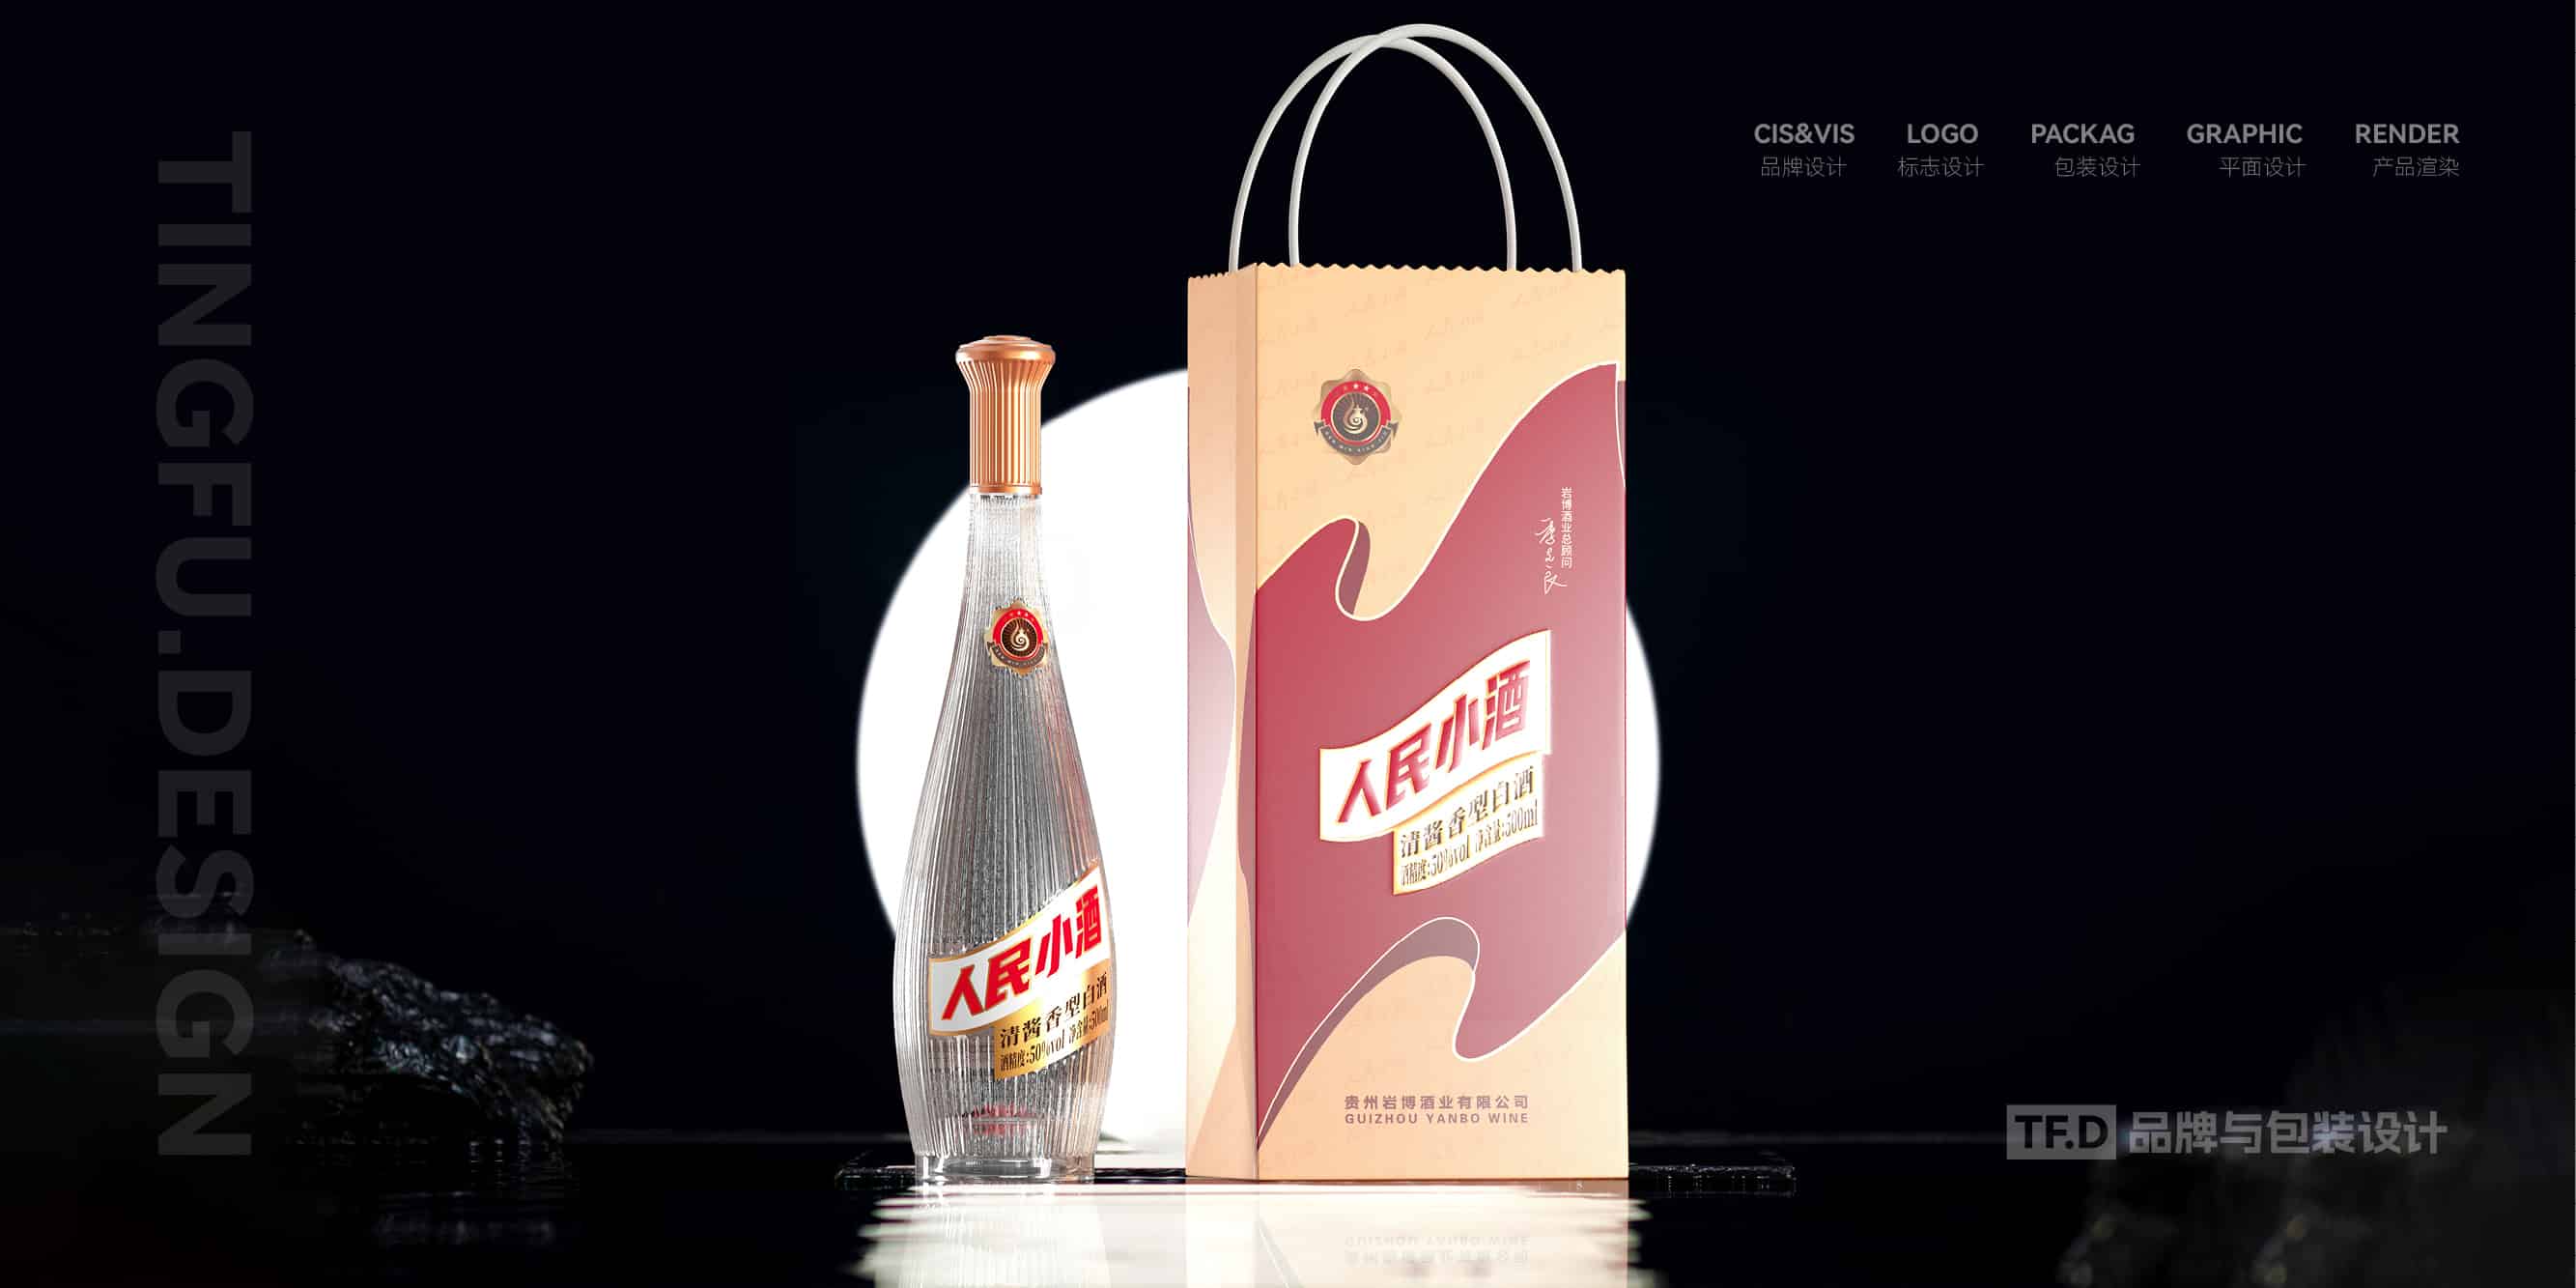 TFD品牌与包装设计-部分酒包装设计案例54-tuya.jpg